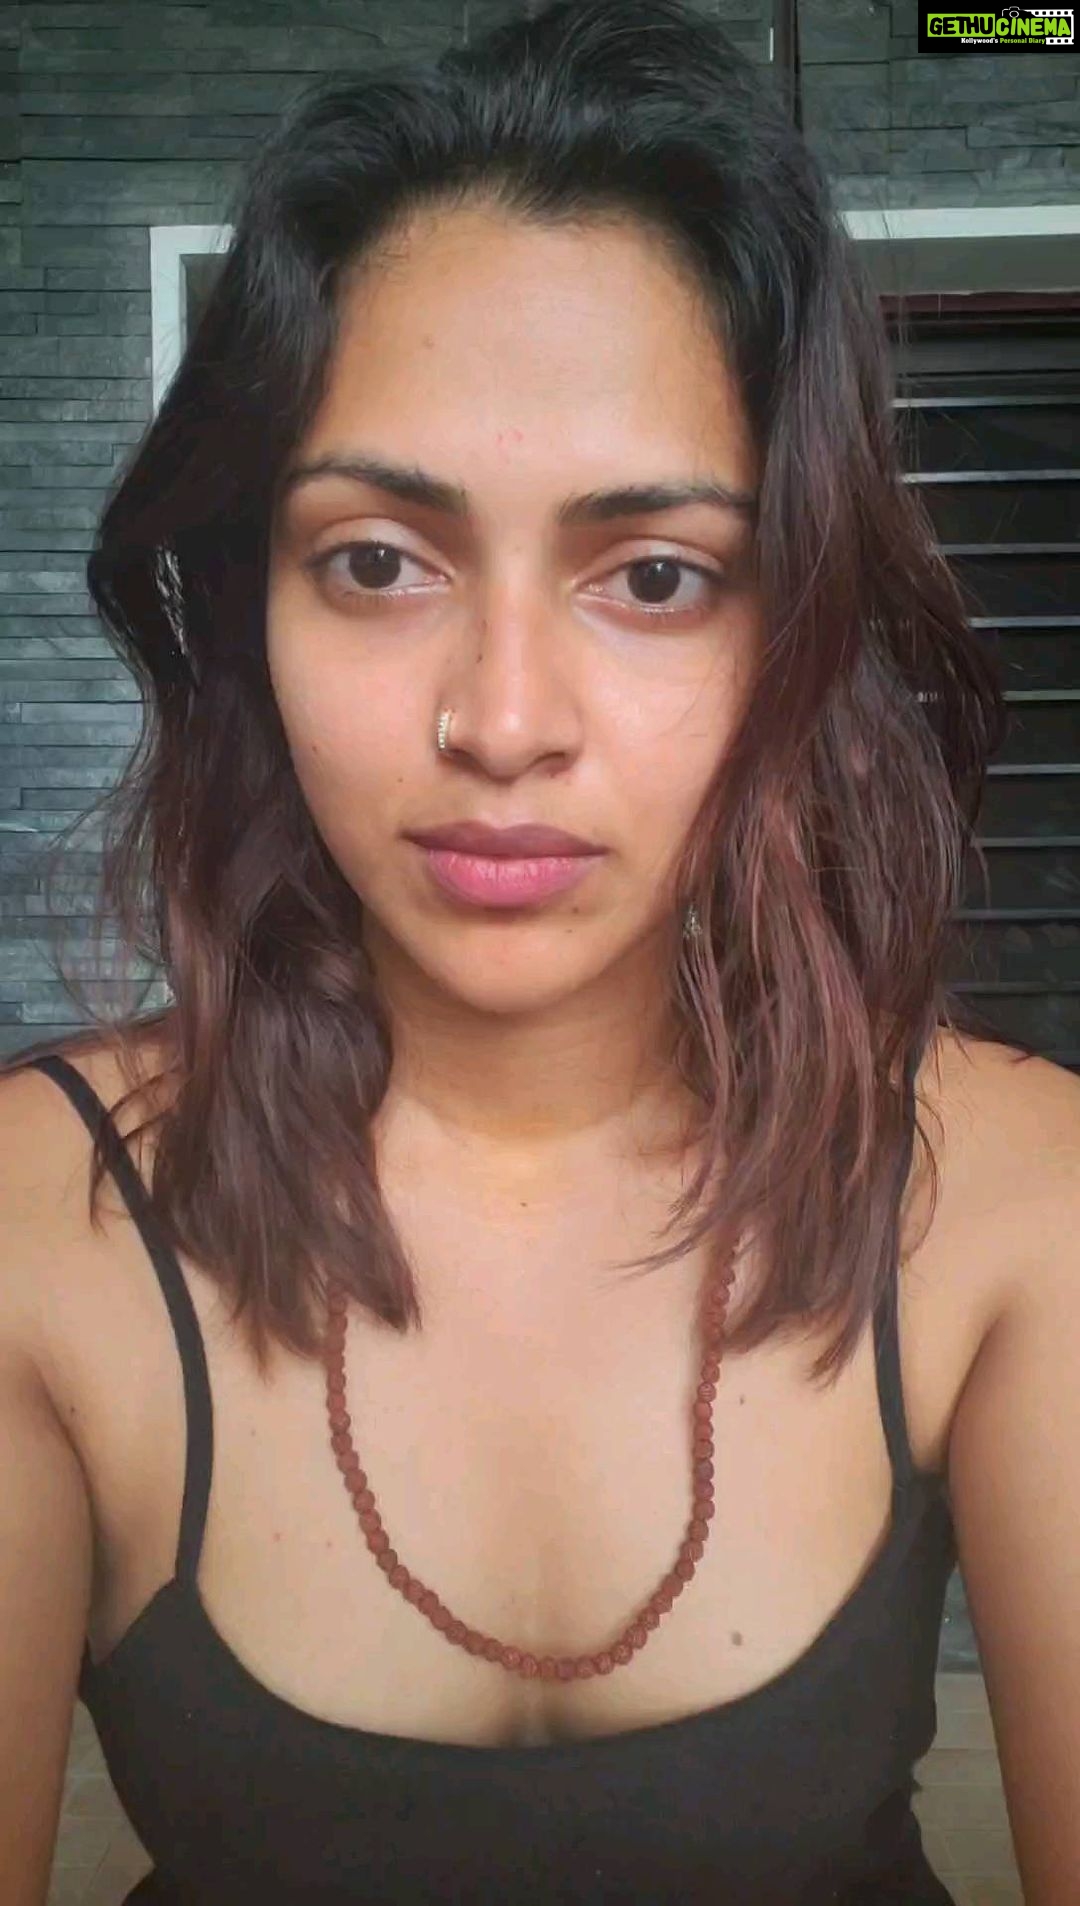 1080px x 1906px - Actress Amala Paul Top 100 Instagram Photos and Posts - Gethu Cinema